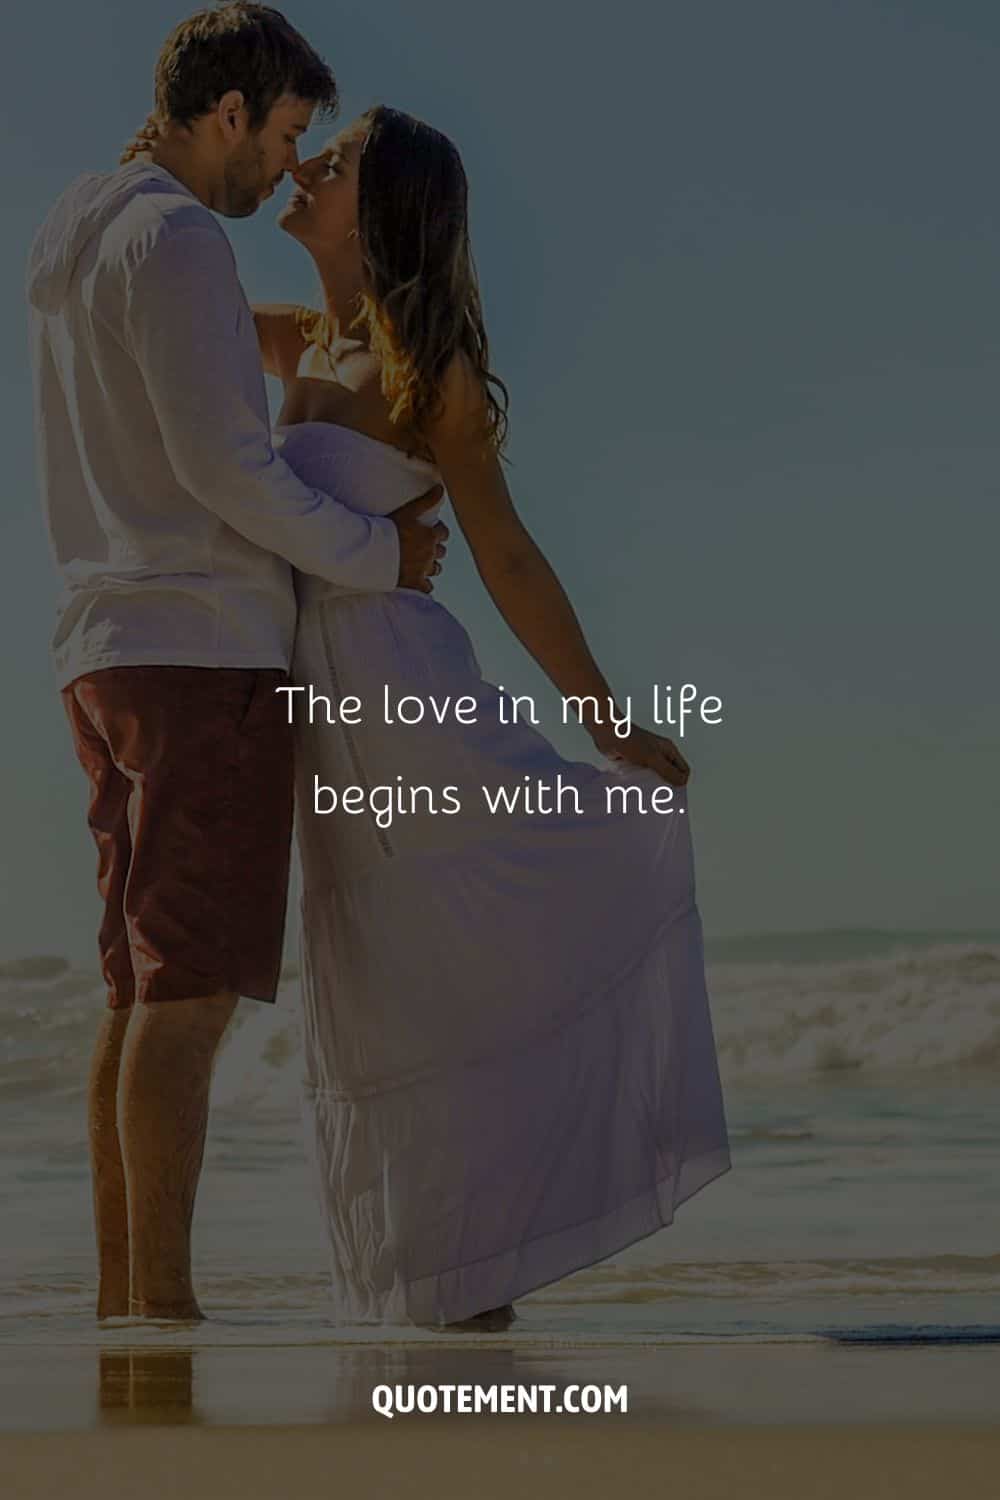 Imagen de amantes besándose en una playa representando una afirmación para atraer el amor.